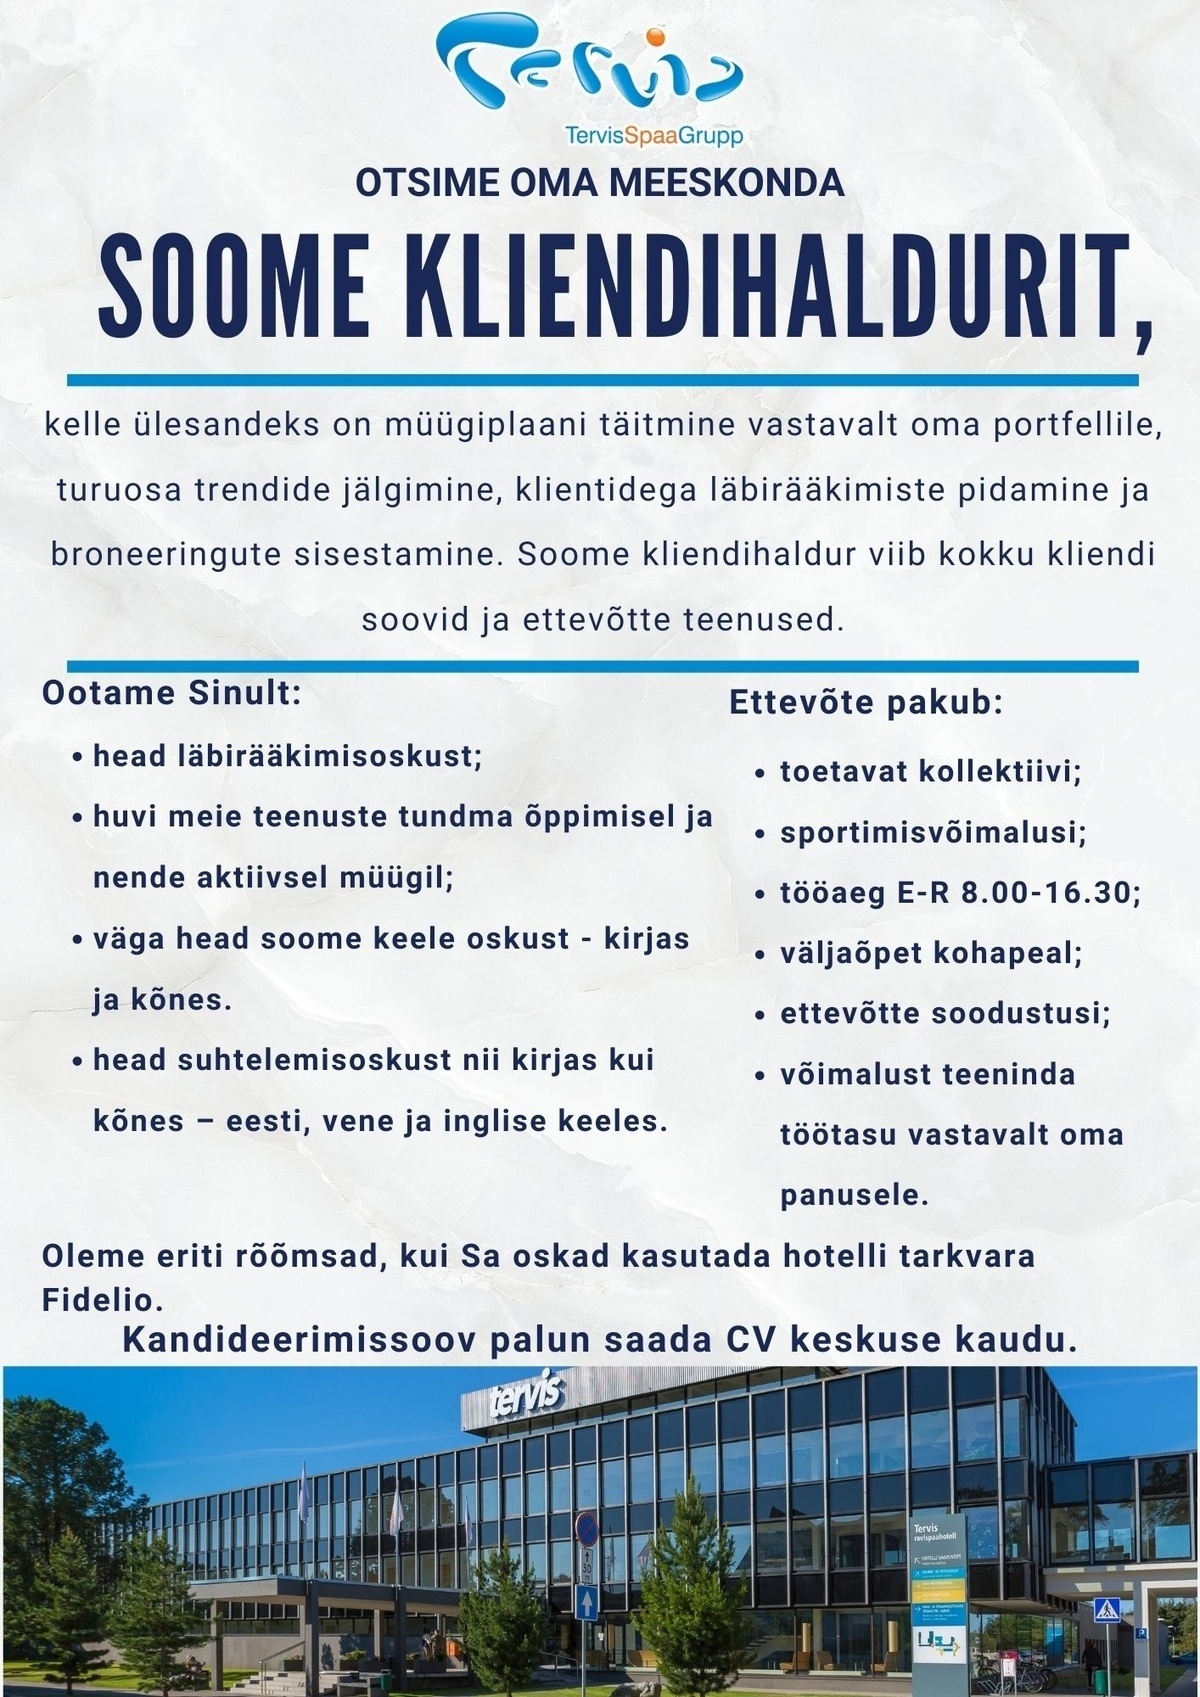 CVKeskus.ee klient Soome turu kliendihaldur